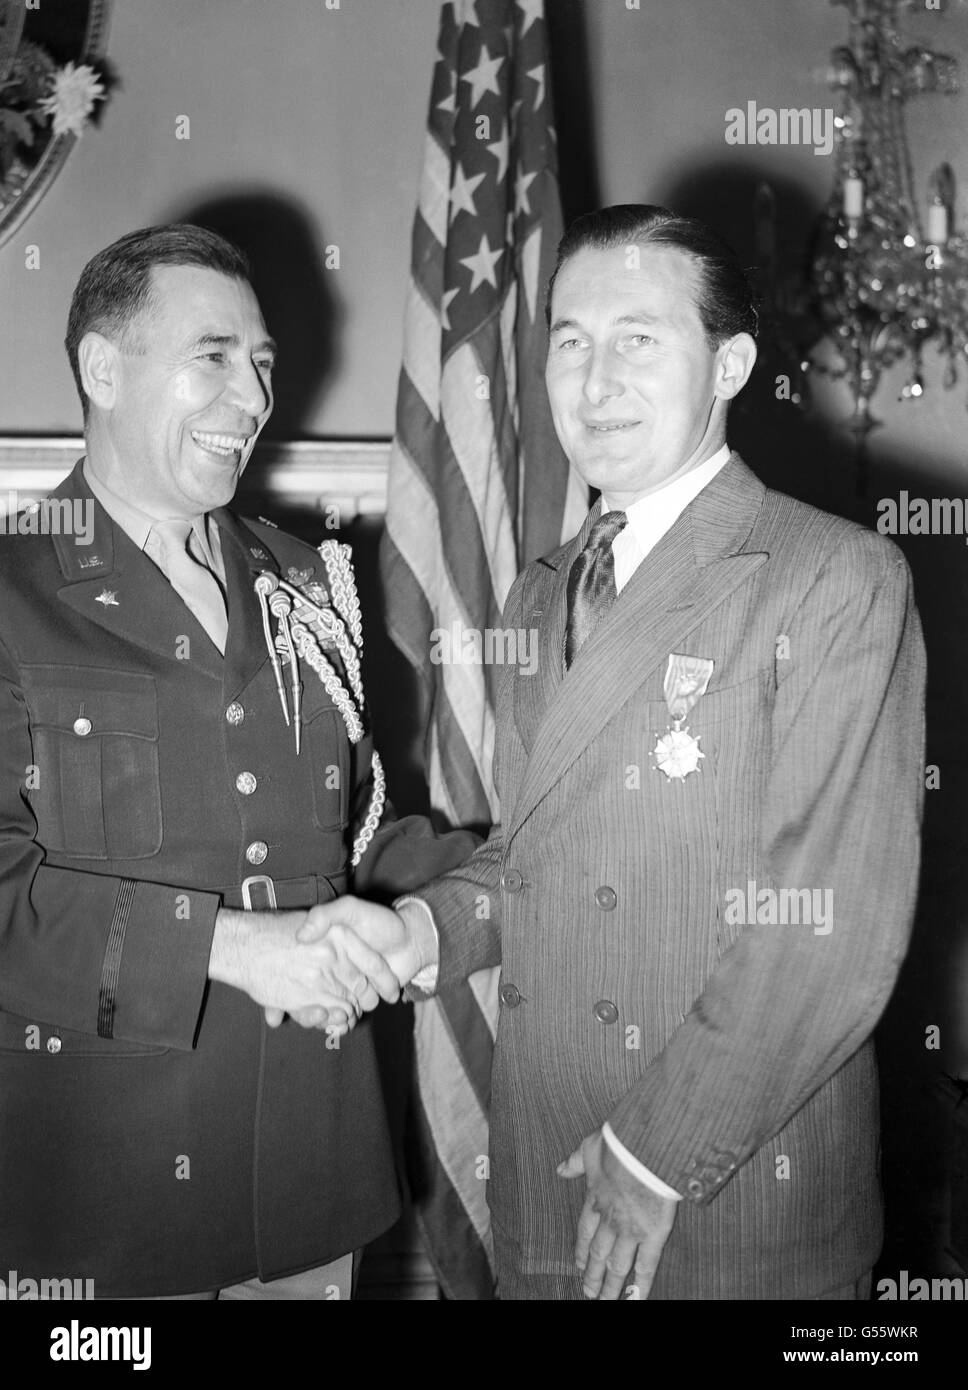 Il Capitano Roy Farran, ex Capitano SAS, riceve la Legione di merito dagli Stati Uniti per le sue azioni durante la battaglia per il quartier generale della 51° Divisione tedesca in Albania. Foto Stock